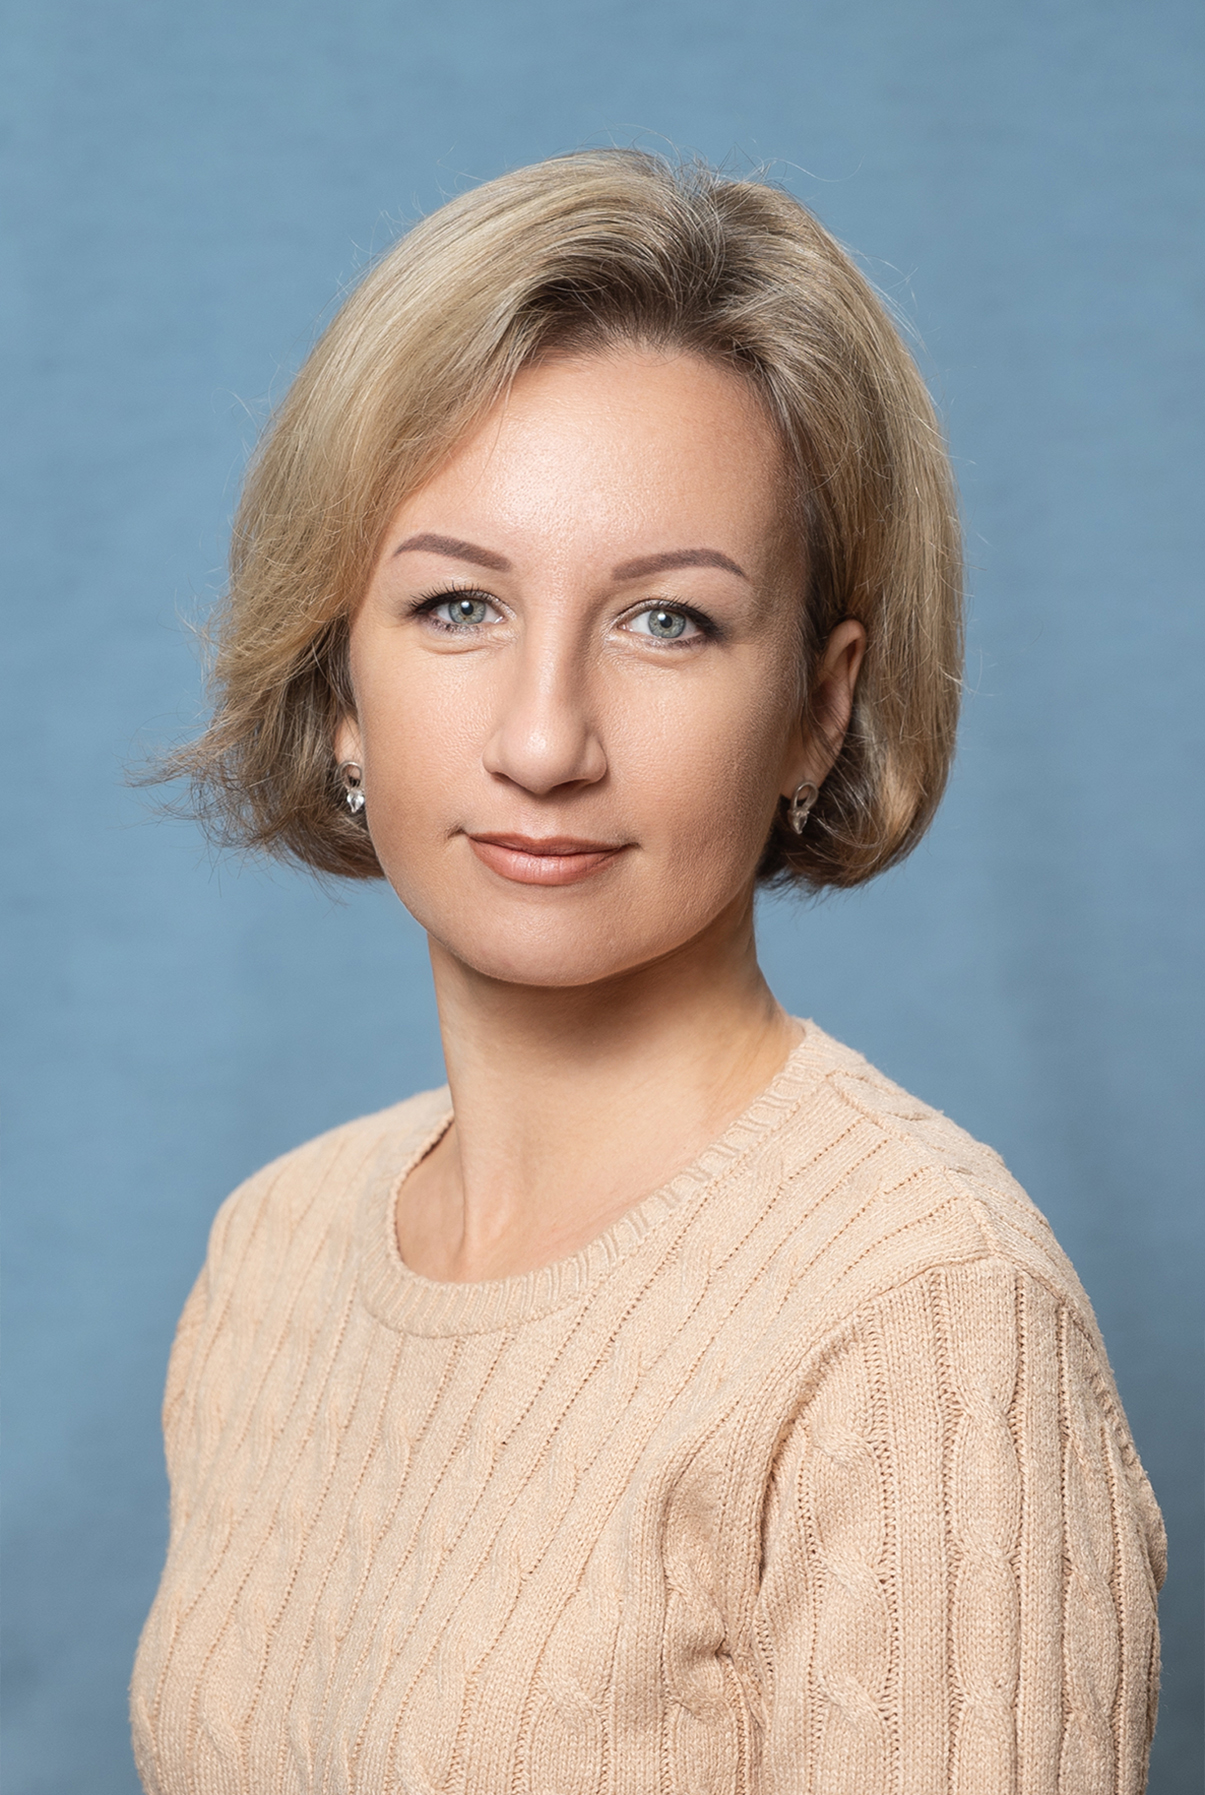 Педагогический работник Давыдова Анна Михайловна.